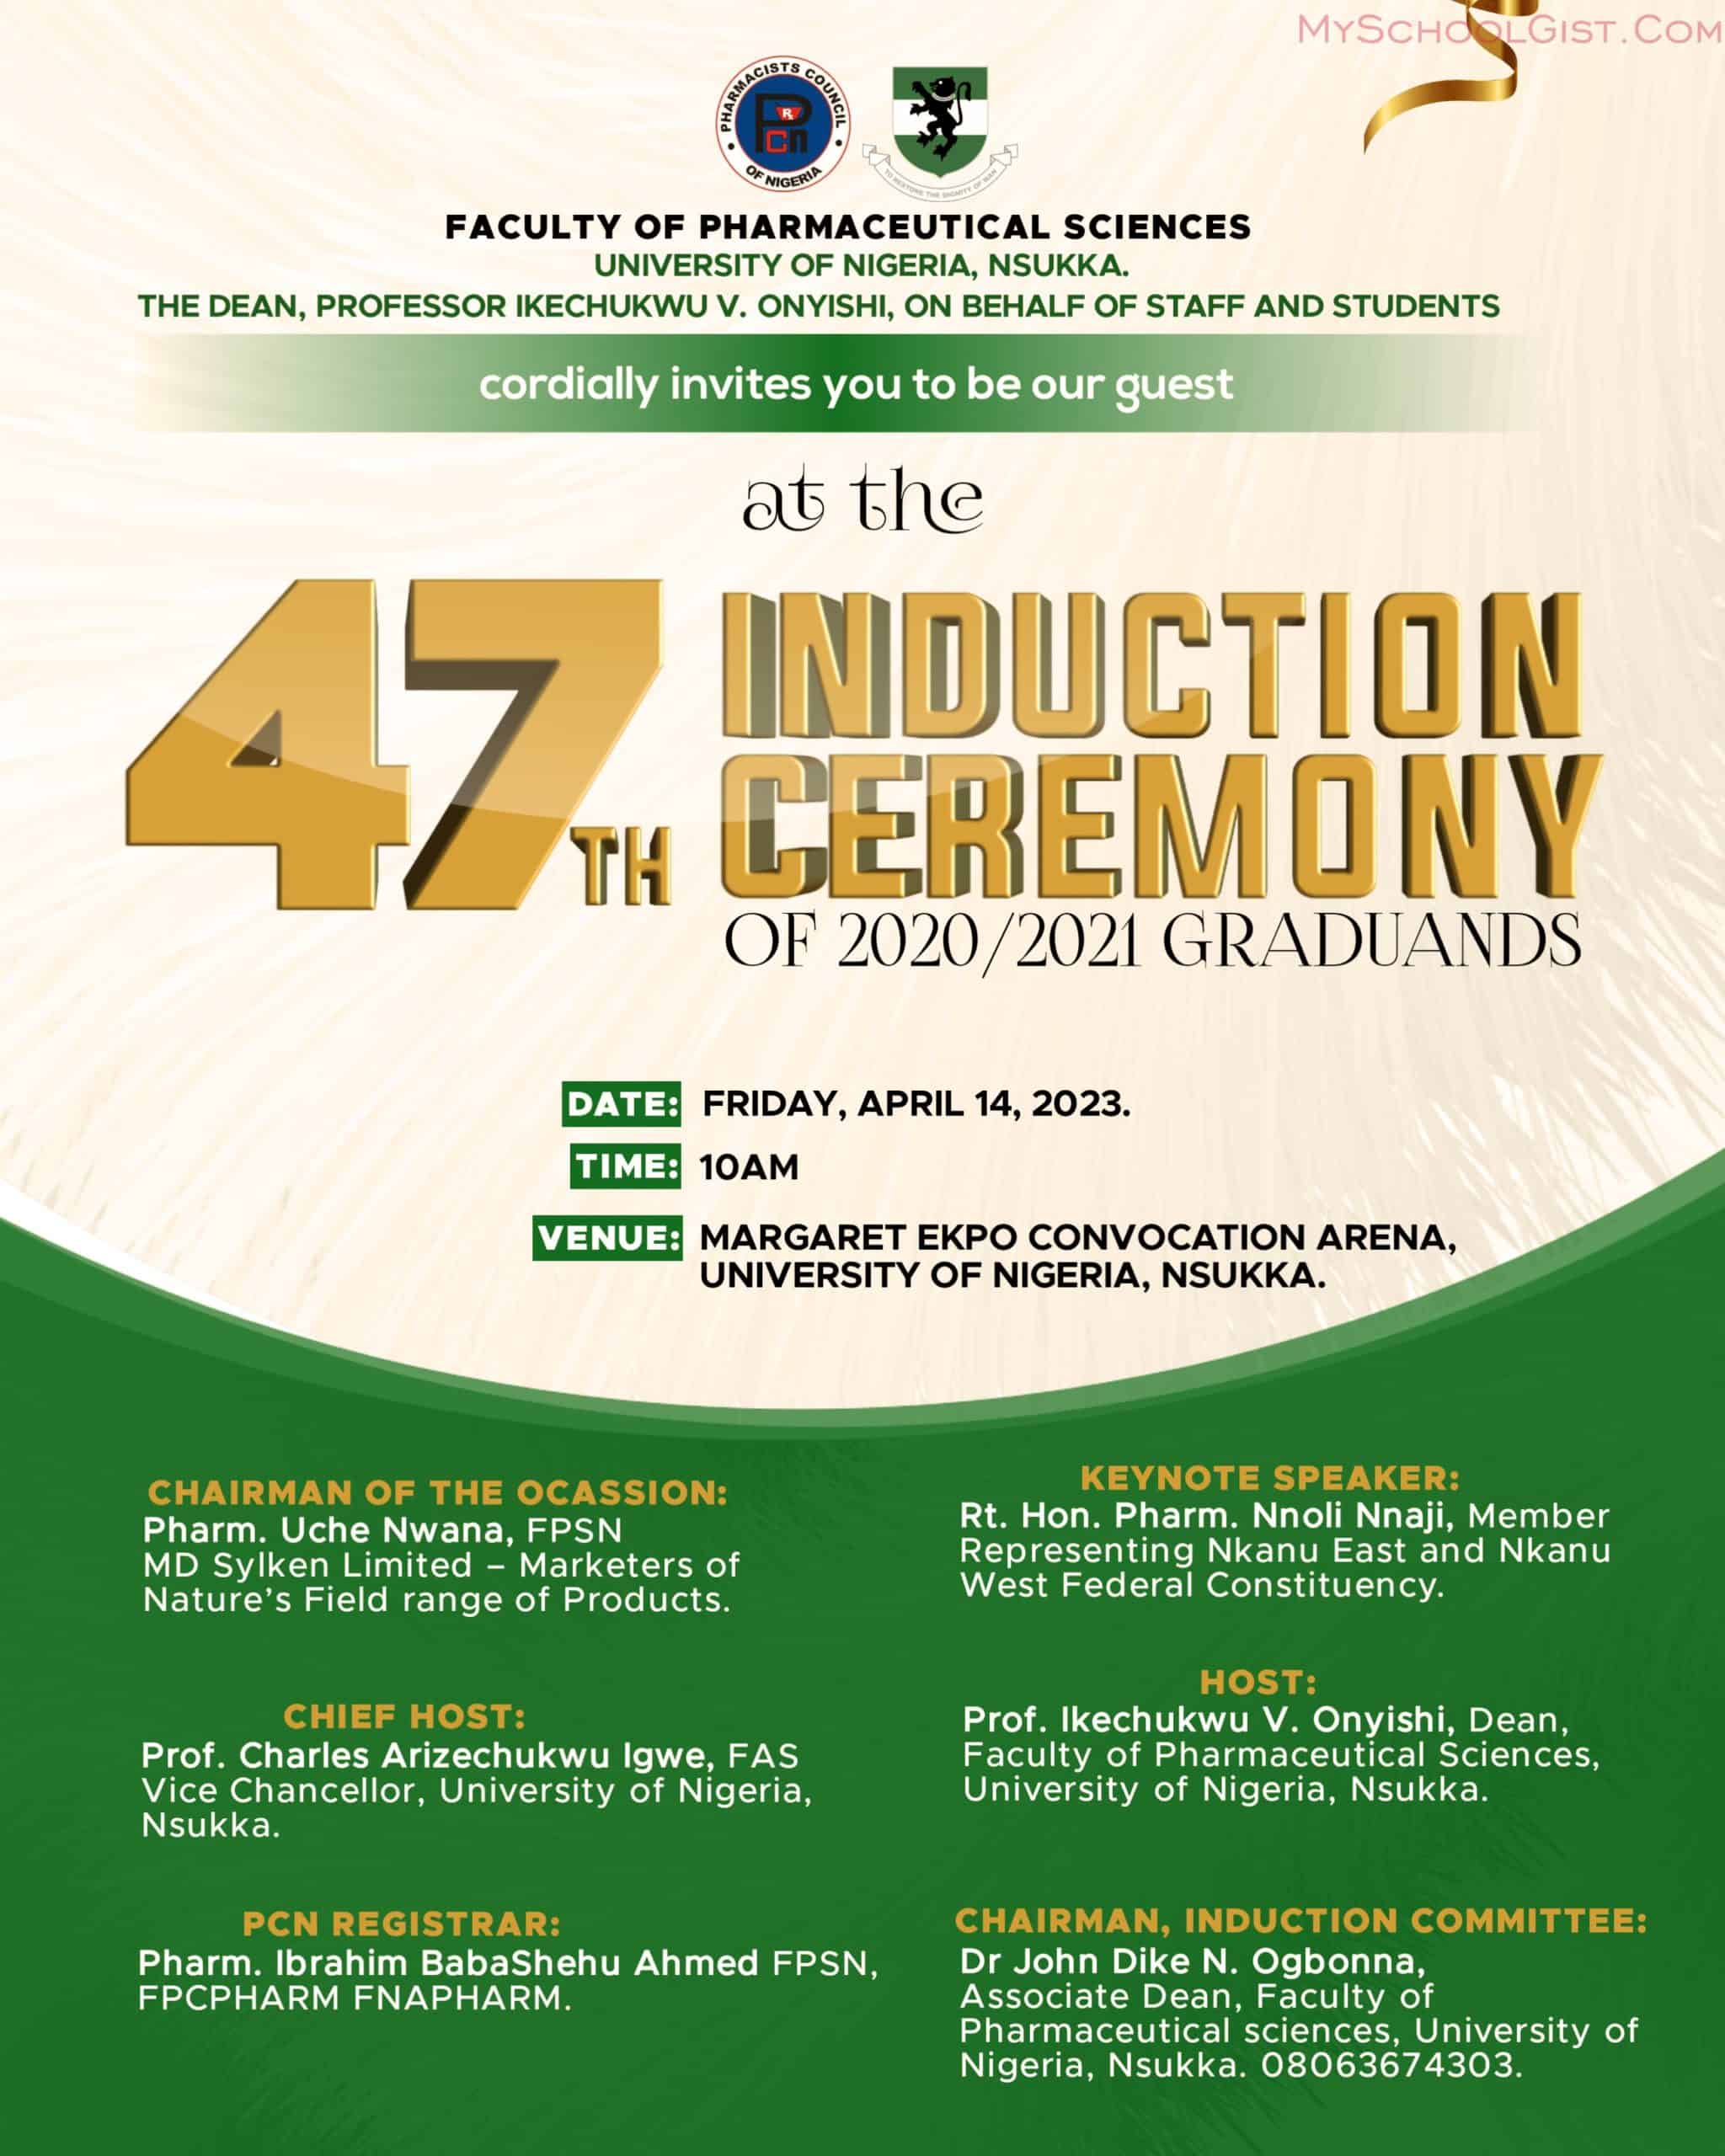 University of Nigeria, Nsukka Celebrates Graduates at 47th Pharmaceutical Sciences Induction